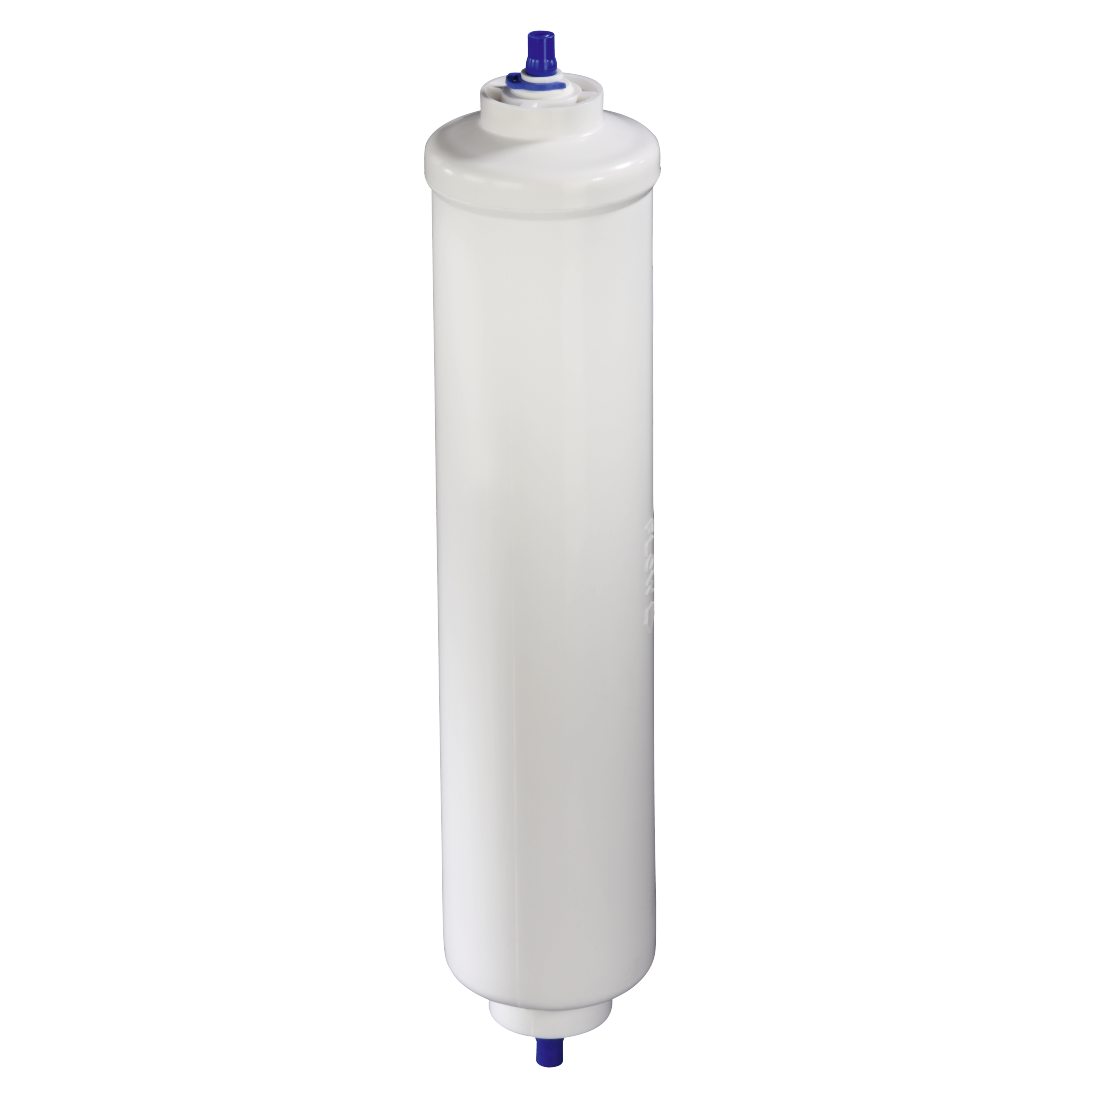 abx Druckfähige Abbildung - Xavax, Externer Universal-Wasserfilter für Side-by-Side-Kühlschränke